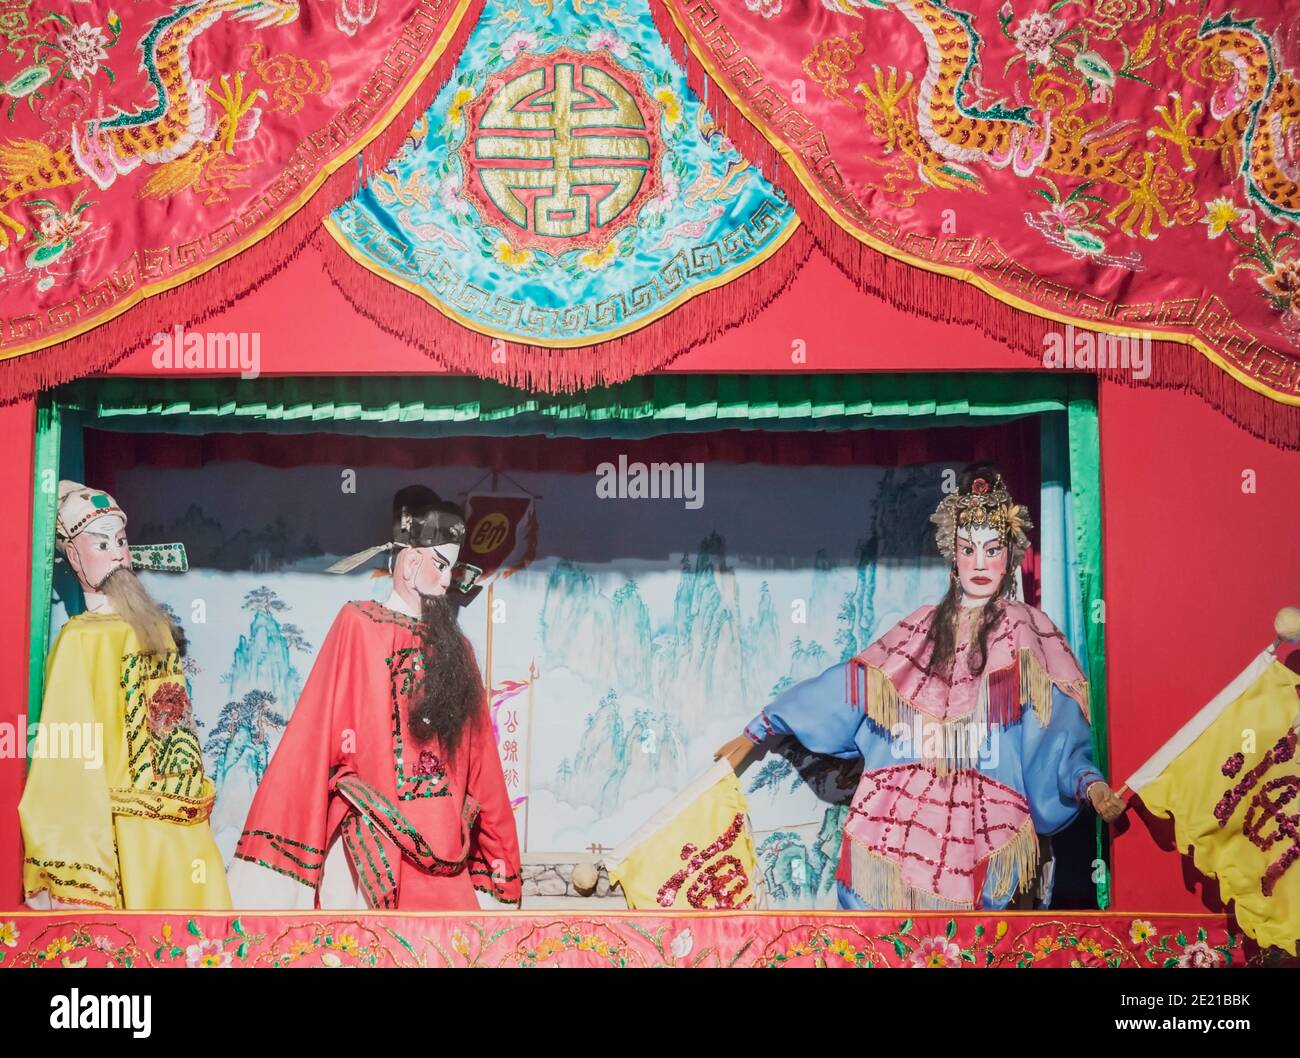 Macao, Chine. Spectacle de marionnettes chinoises tel qu'il a été fait dans la province de Canton. Exposition au Musée de Macao. Le centre historique de Macao est une Herita mondiale de l'UNESCO Banque D'Images